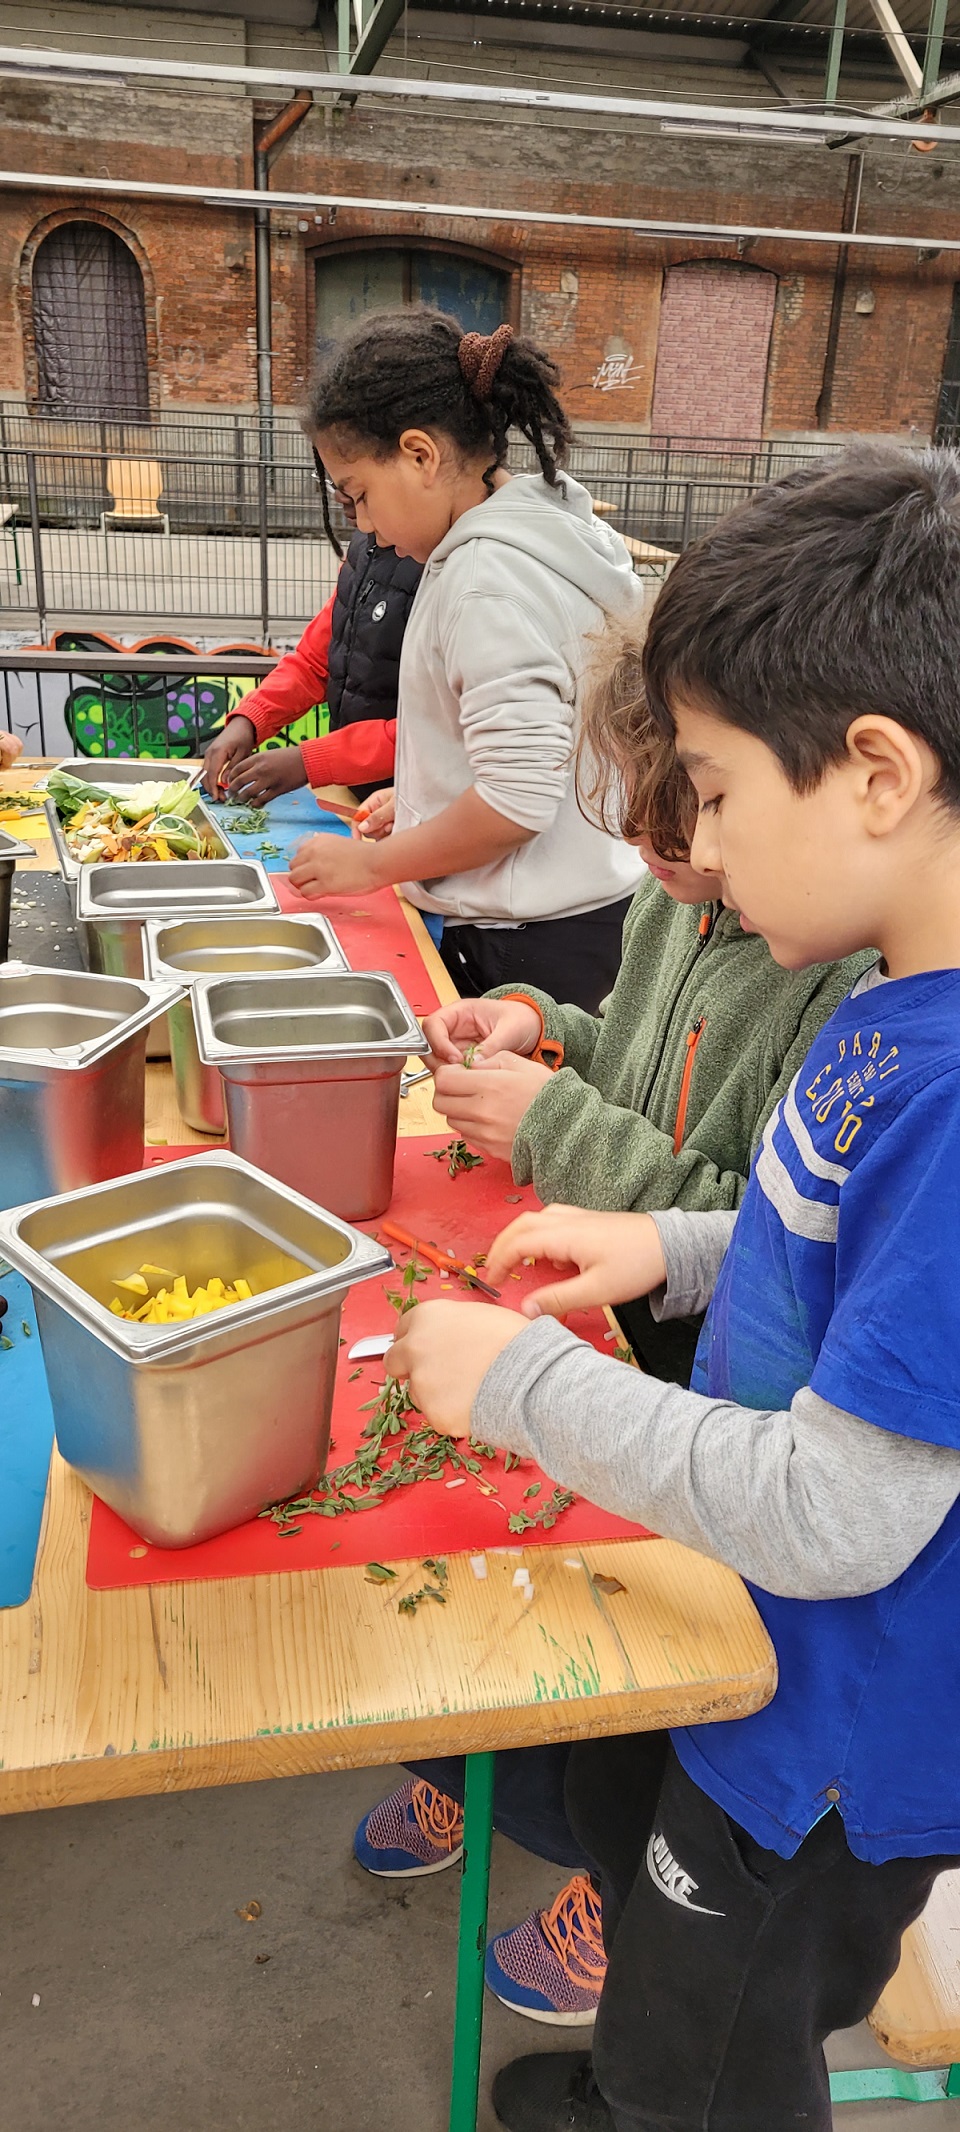 Kinder zupfen Blätter vom Majoran ab in der Alten Gleishalle